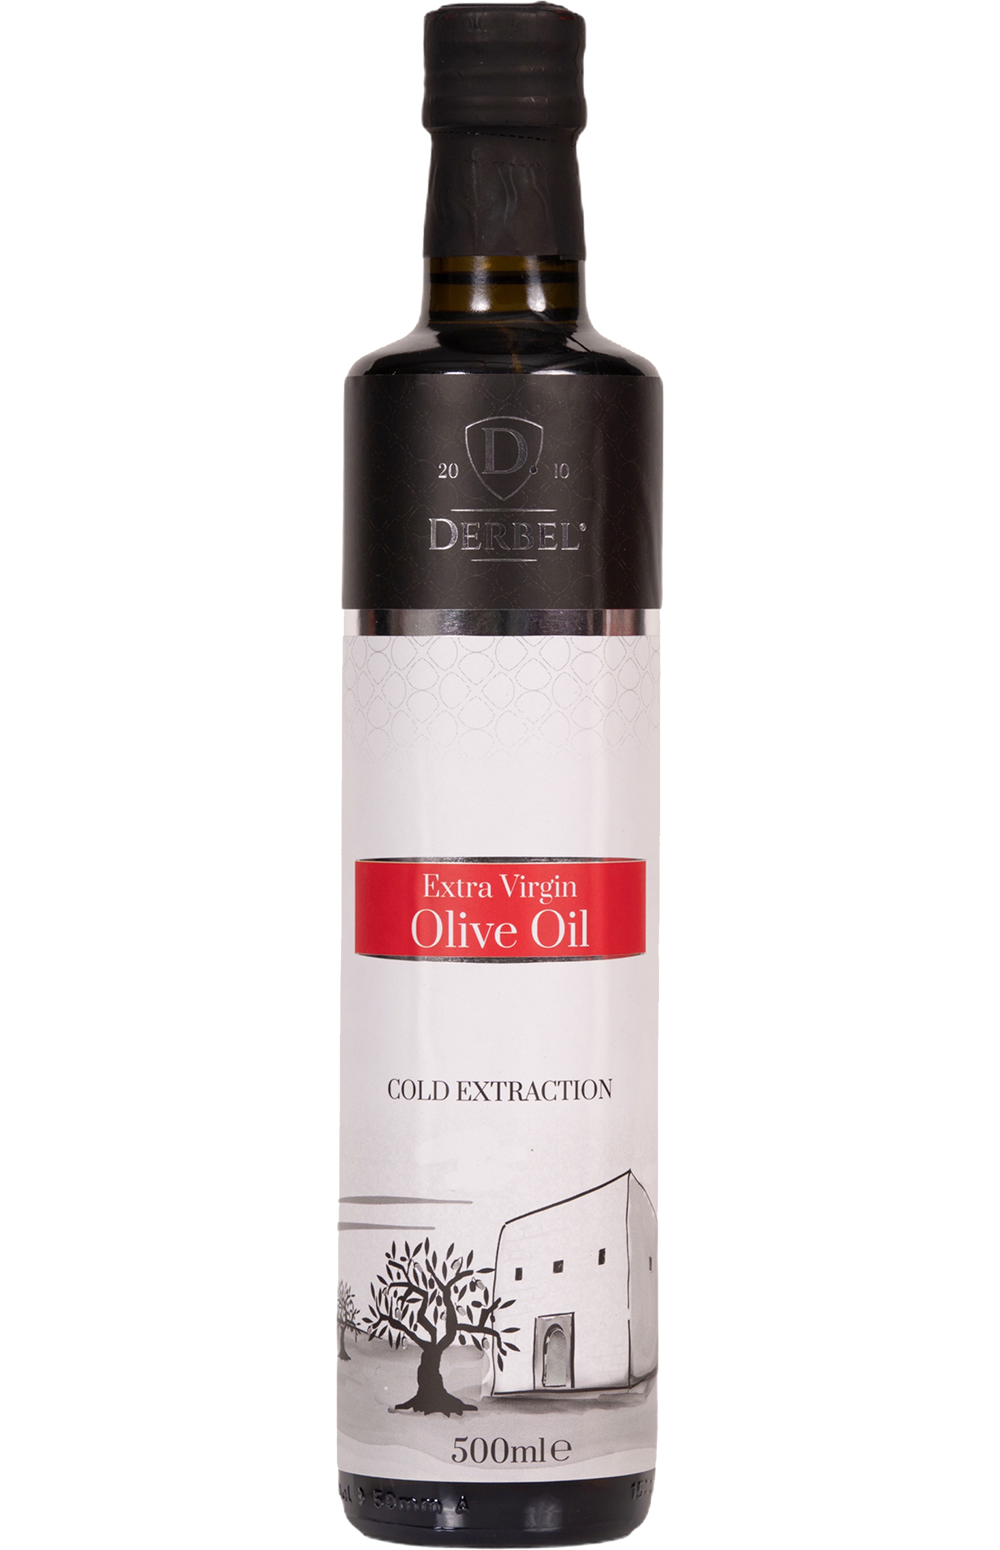 Derbel Olive oil